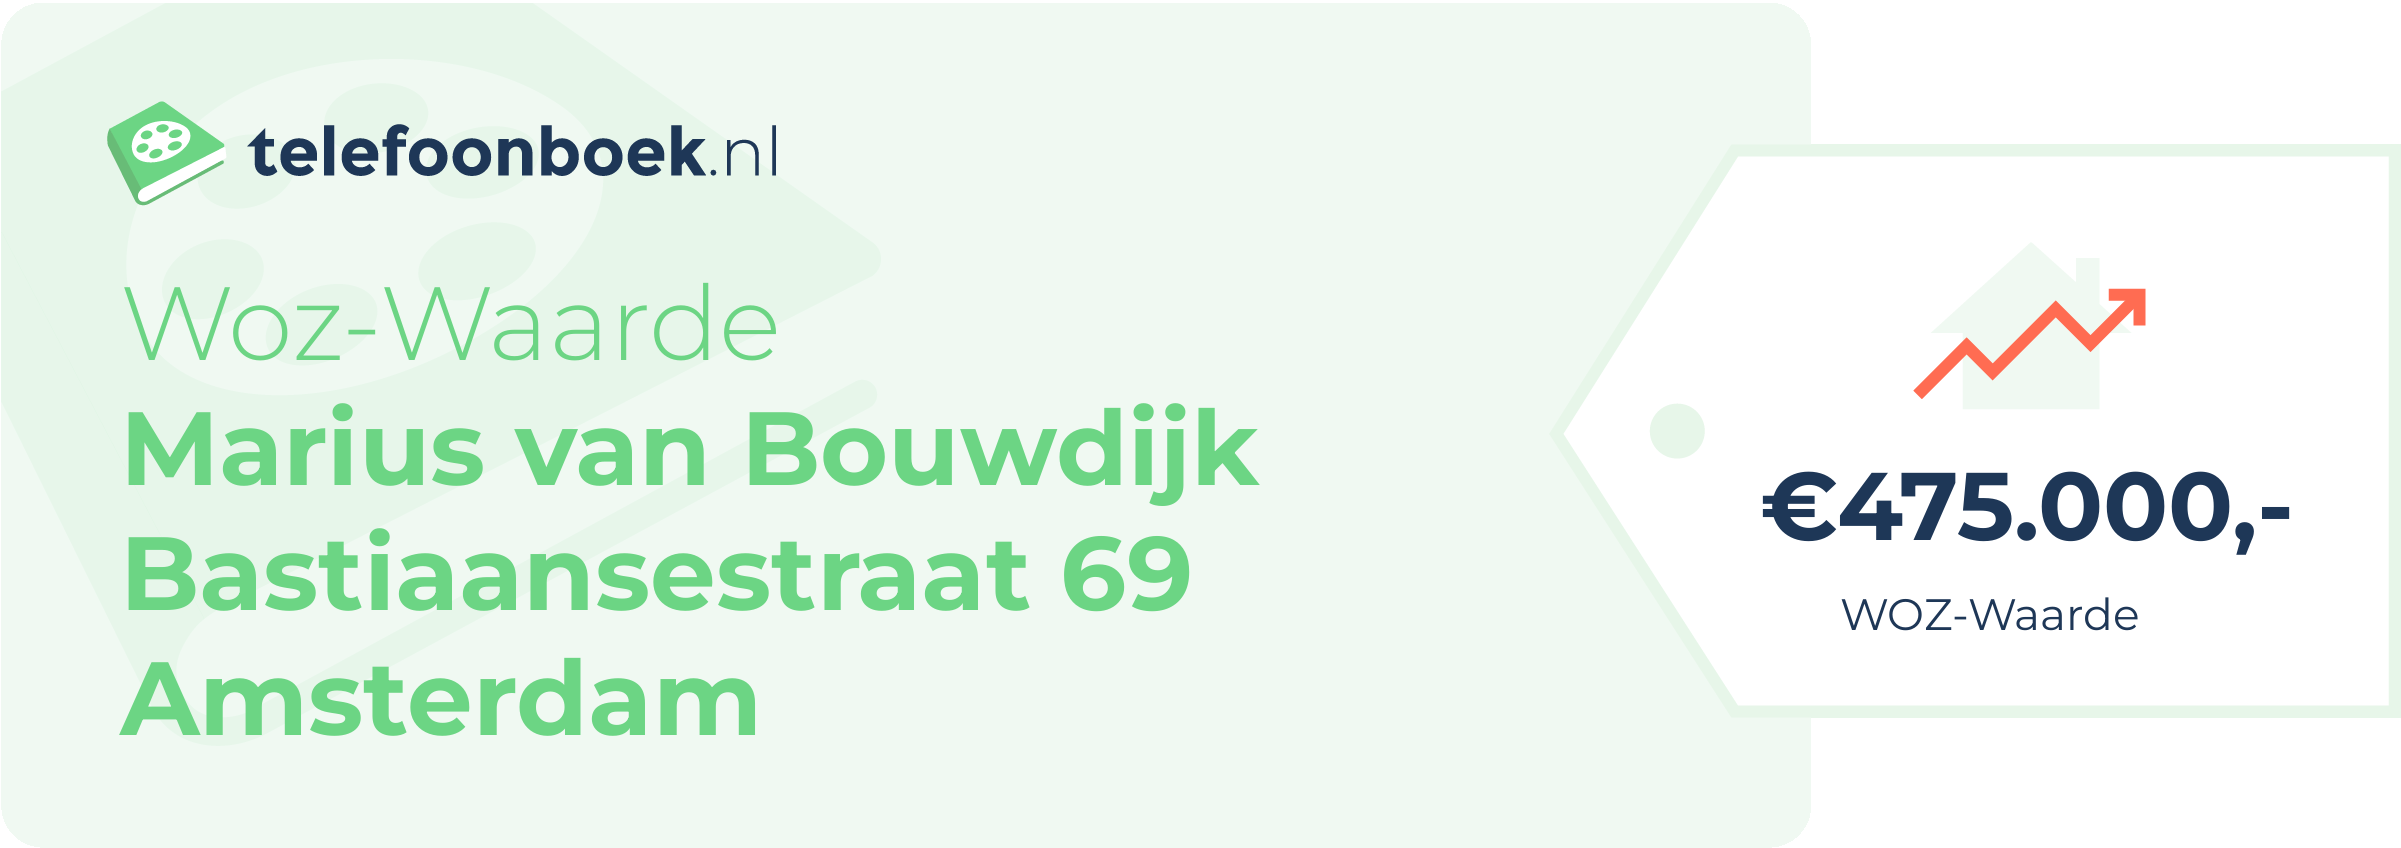 WOZ-waarde Marius Van Bouwdijk Bastiaansestraat 69 Amsterdam